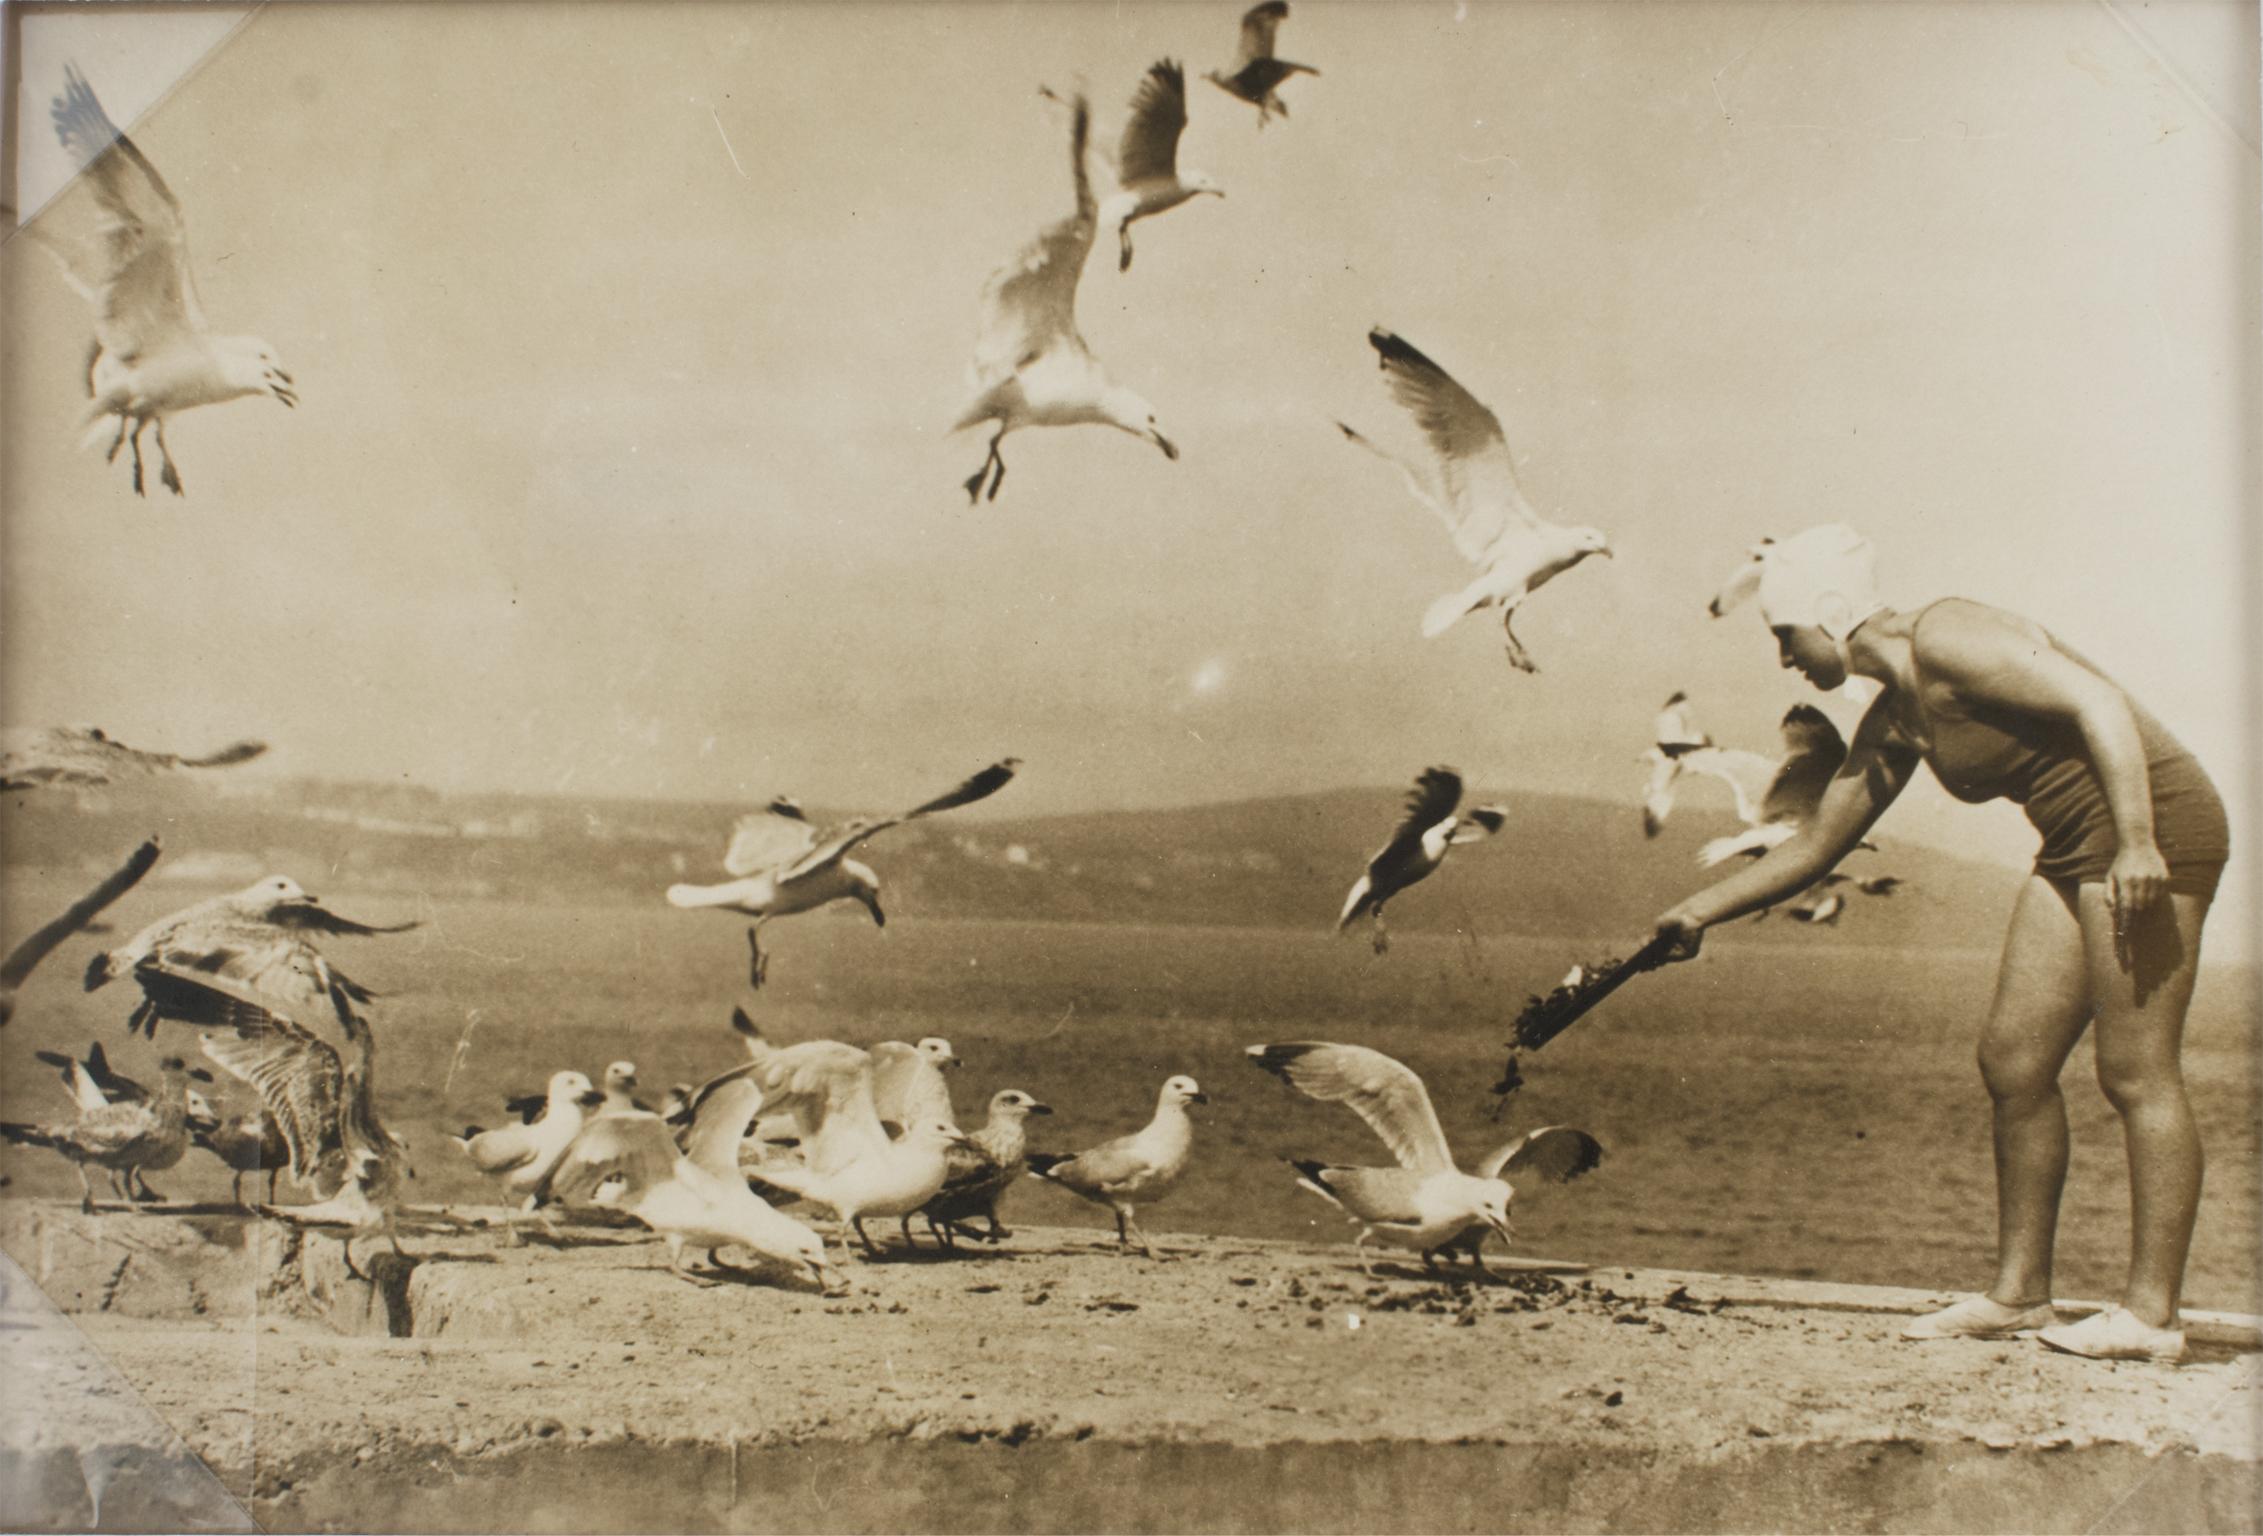 Landscape Photograph Press Agency Trampus - Sur la plage avec les mouettes, photographie noir et blanc au gélatino d'argent de 1930